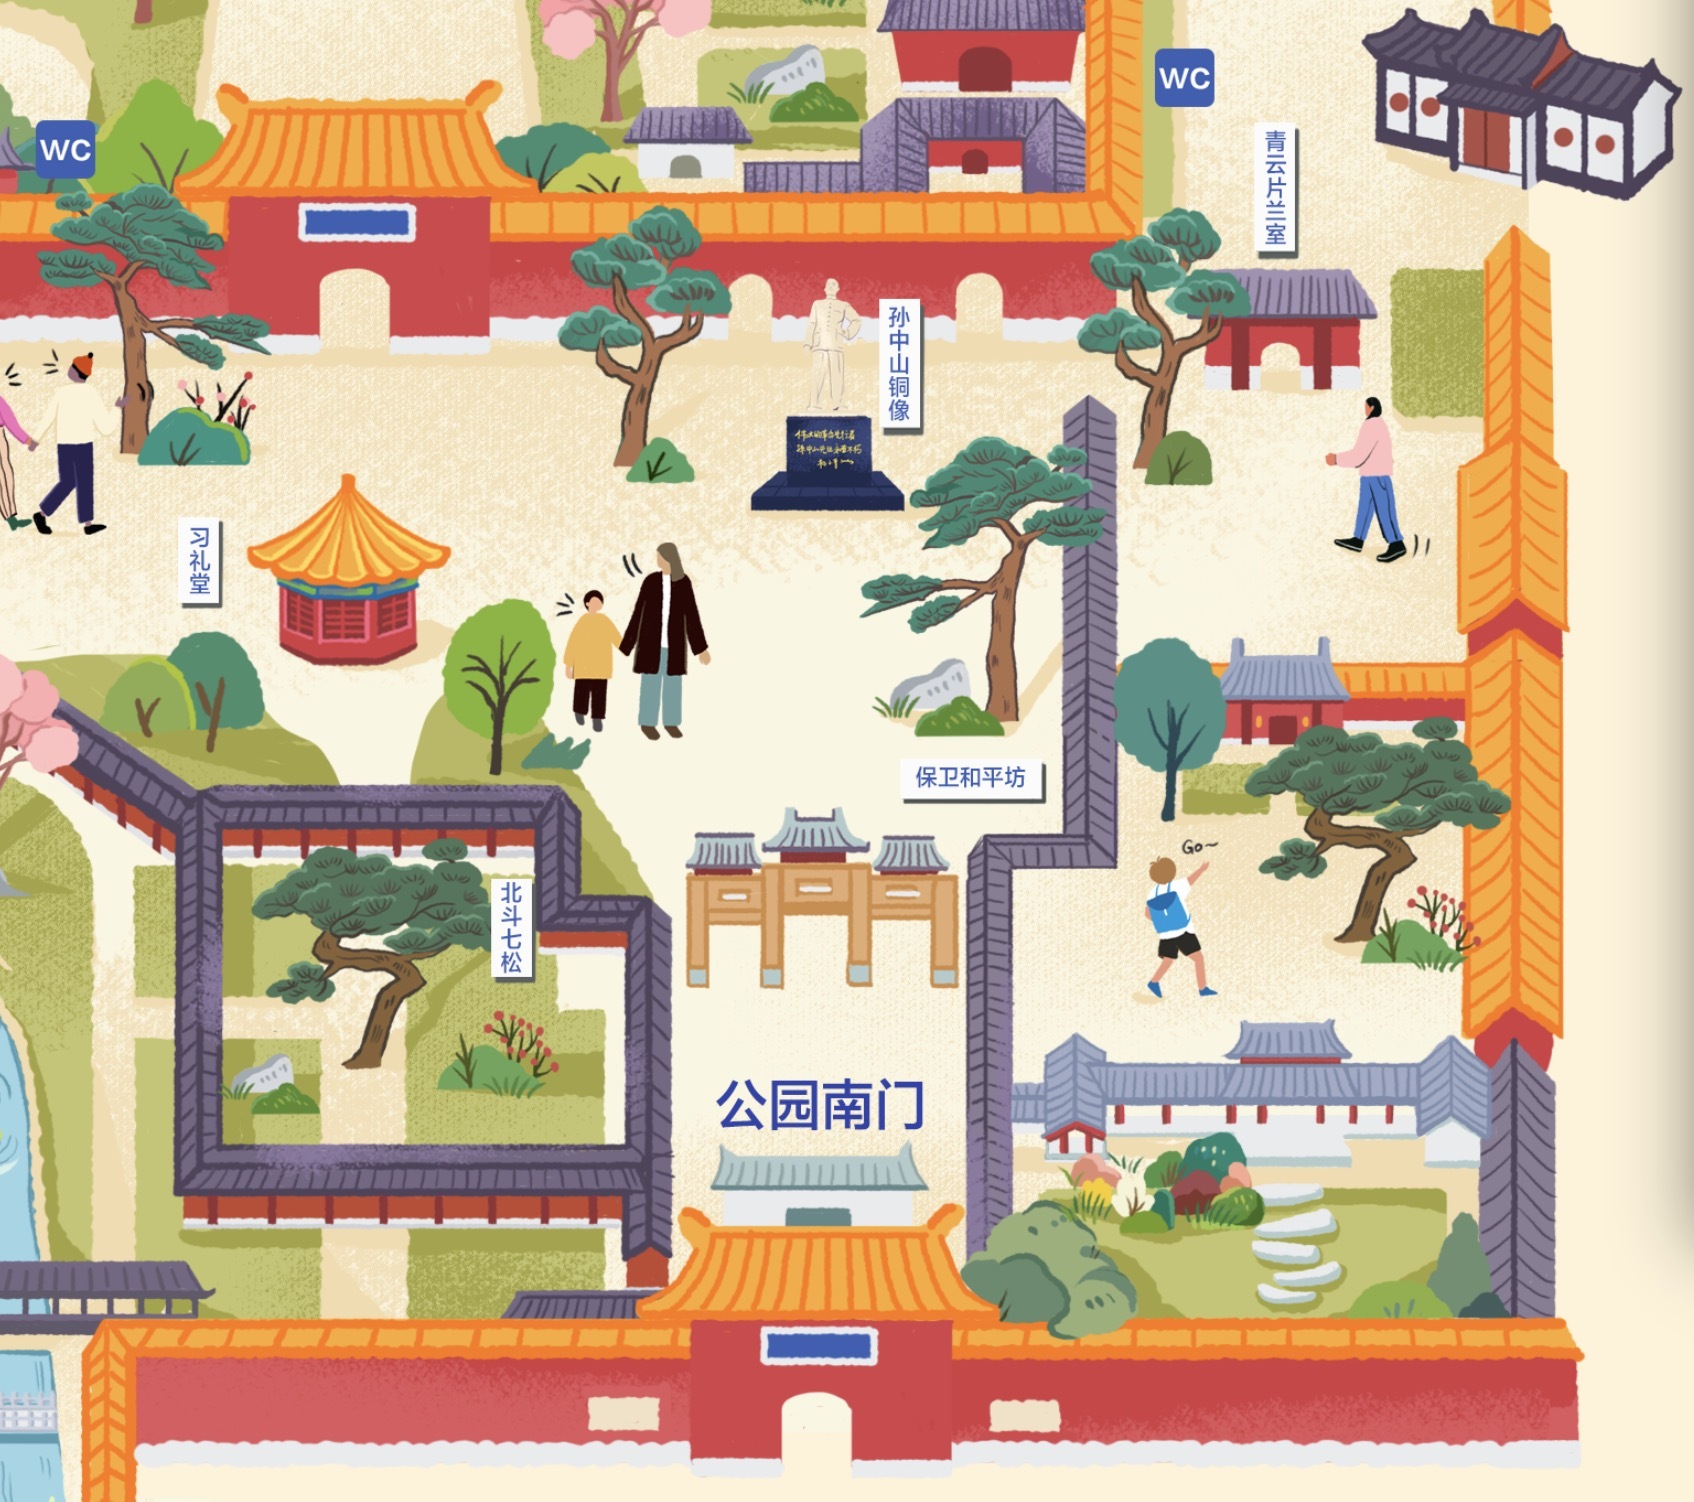 北京中山公园手绘地图导览图